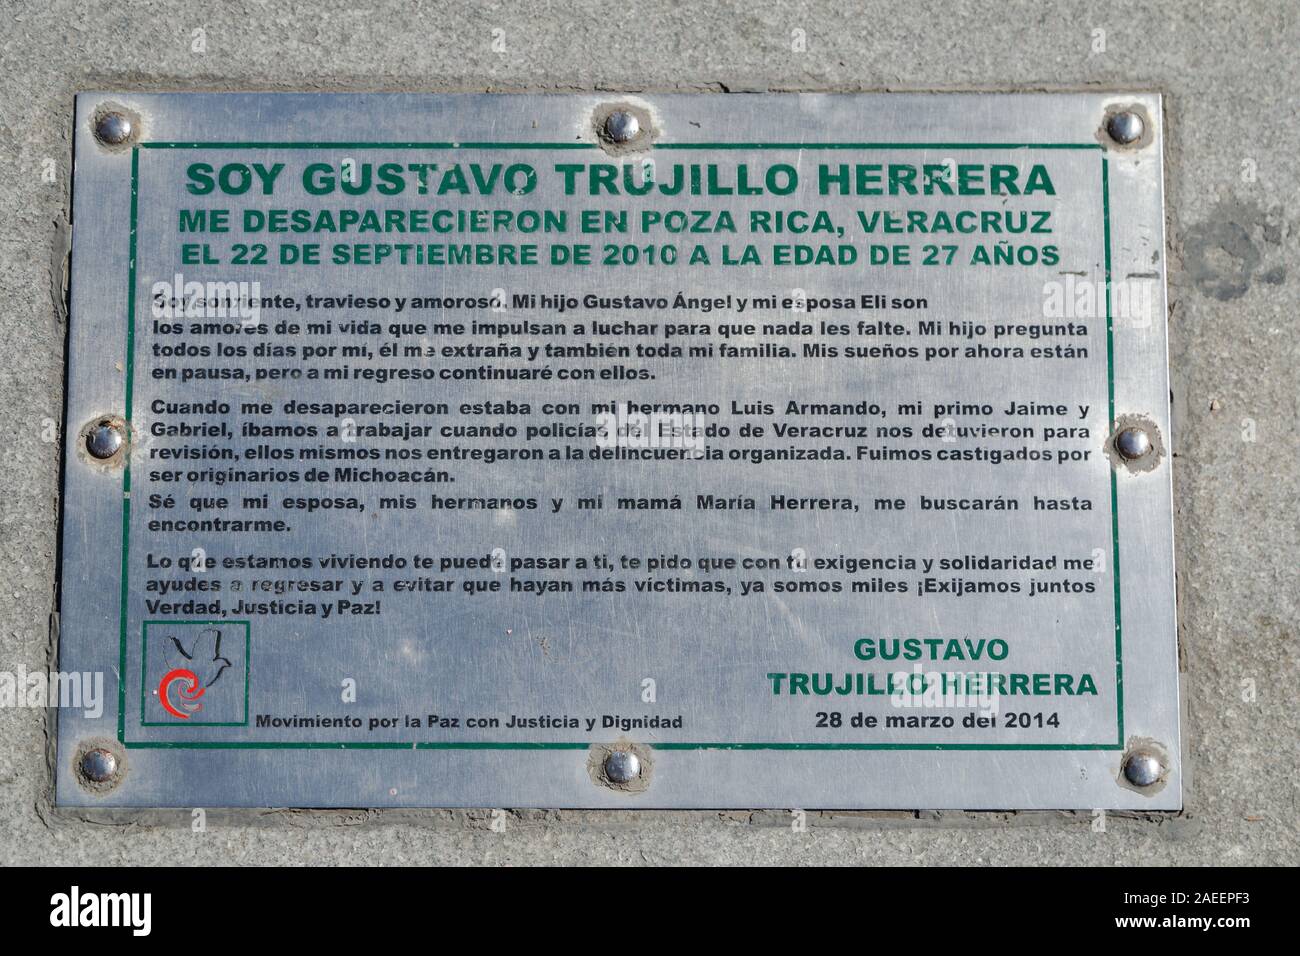 Une vue détaillée de l'une des plaquse installée à Estela de Luz en dehors du parc Chapultepec sur les personnes disparues dans les guerres de drogue, Mexico, Mexique. Banque D'Images